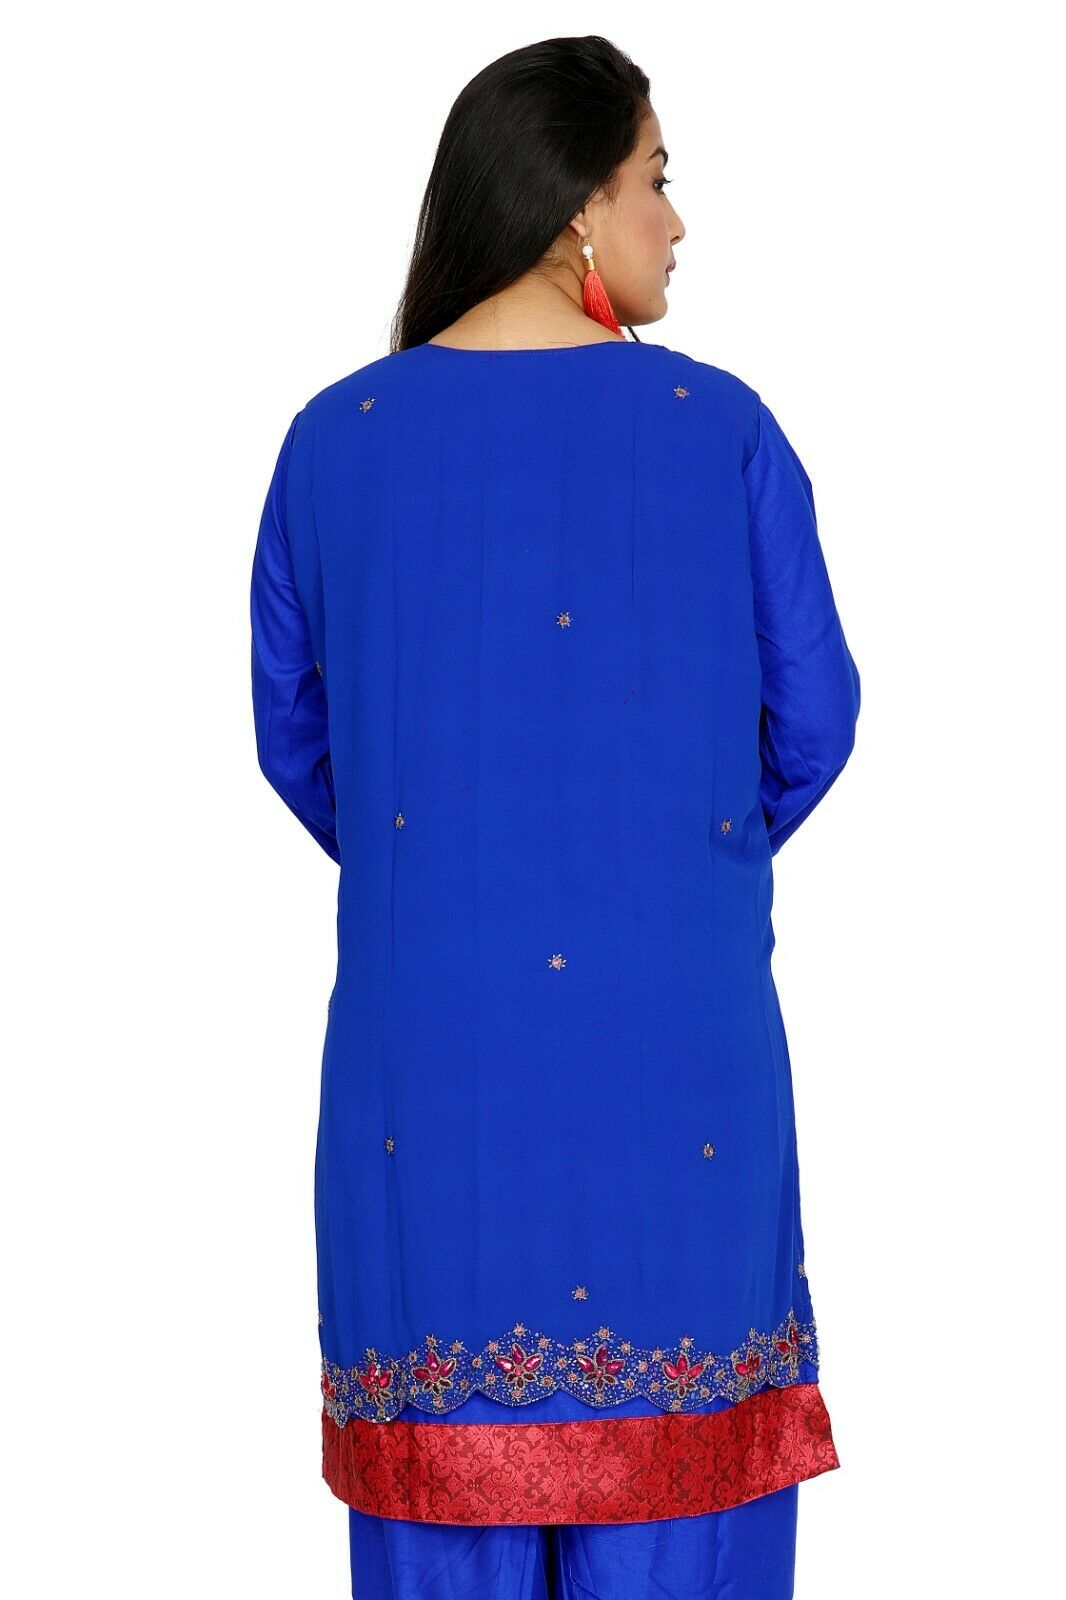 Blue Salwar Kameez for Women | Designer Partywear Dress for Women